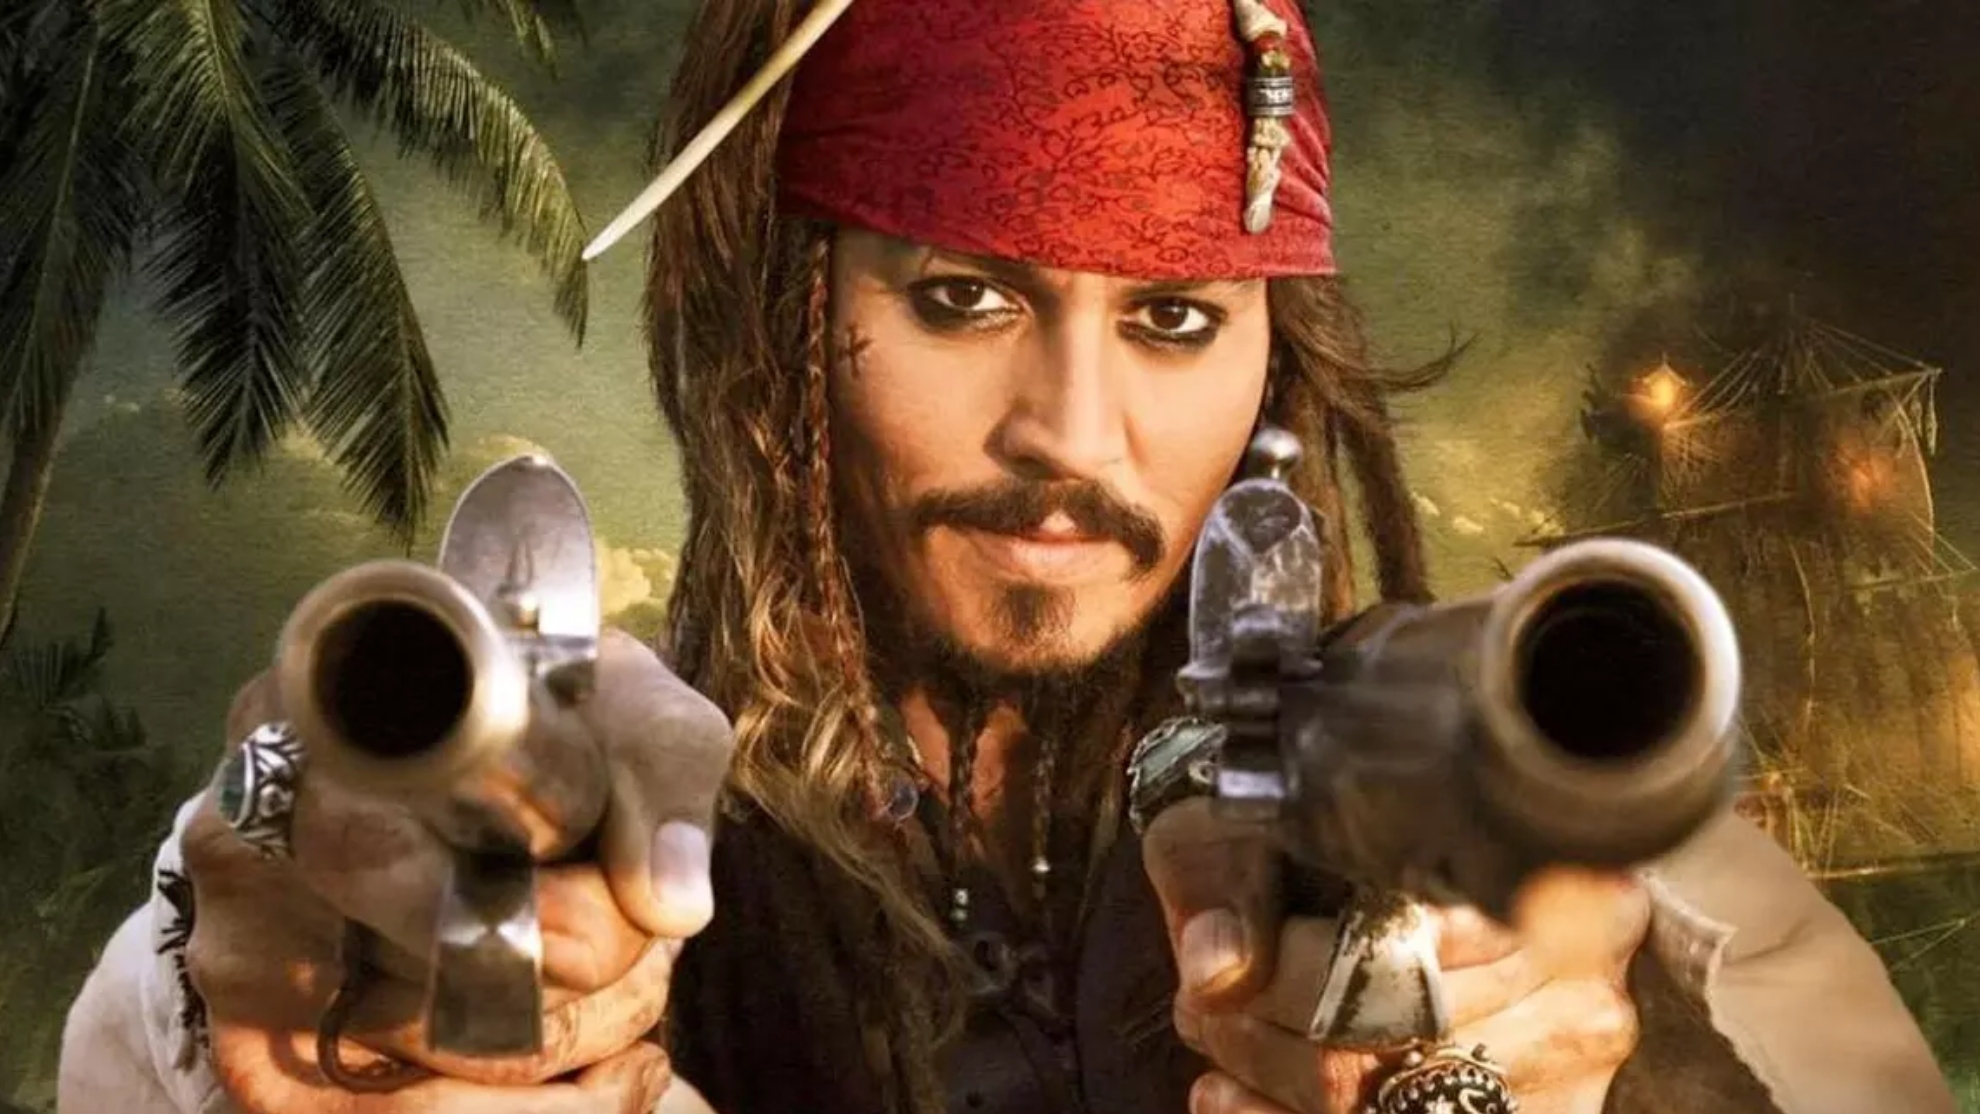 El posible regreso de Johnny Depp a 'Piratas del Caribe': "El futuro está aún por decidir"